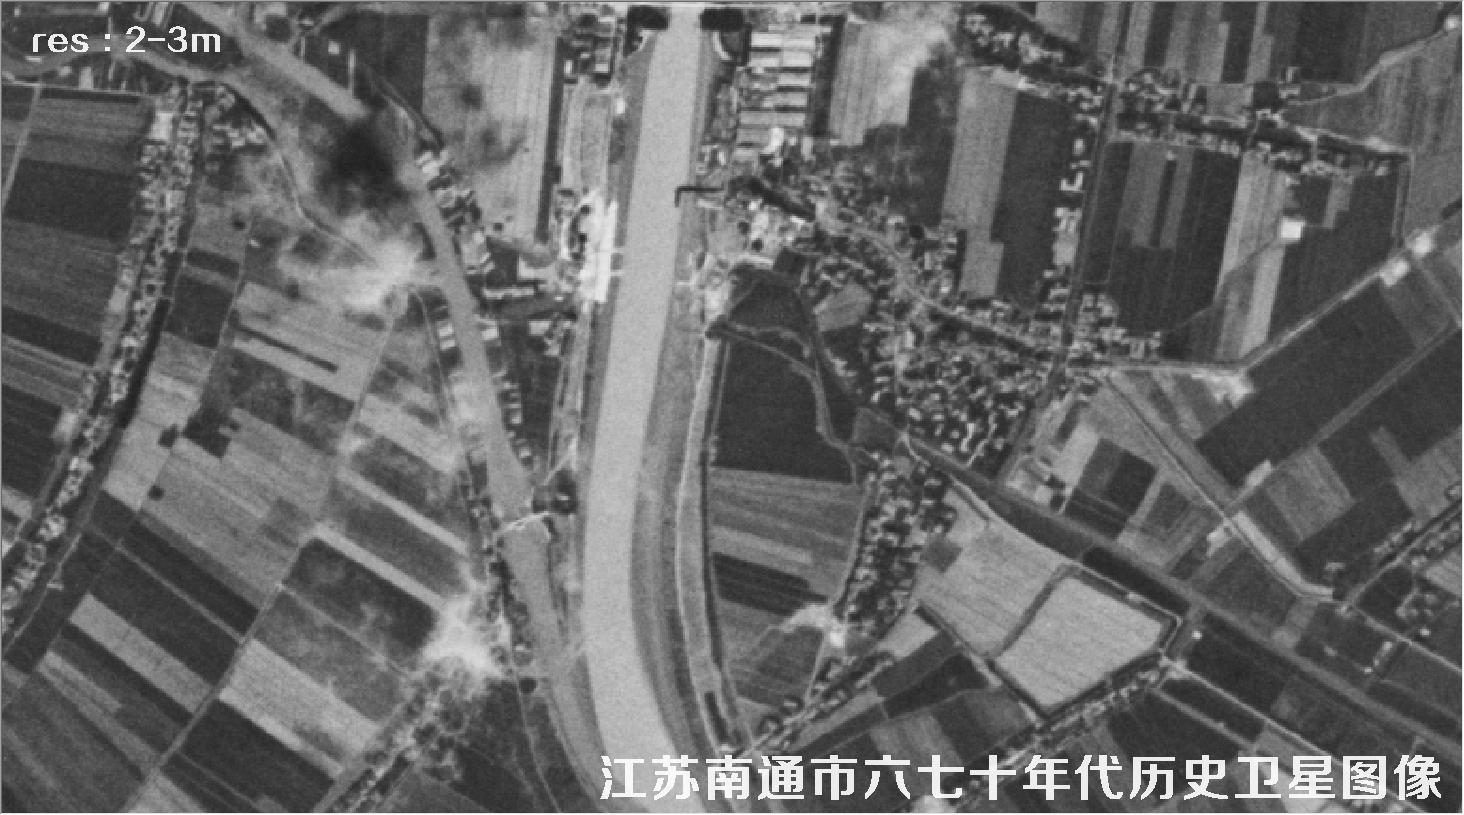 江苏省南通市某区域六七十年代锁眼卫星卫星历史图像